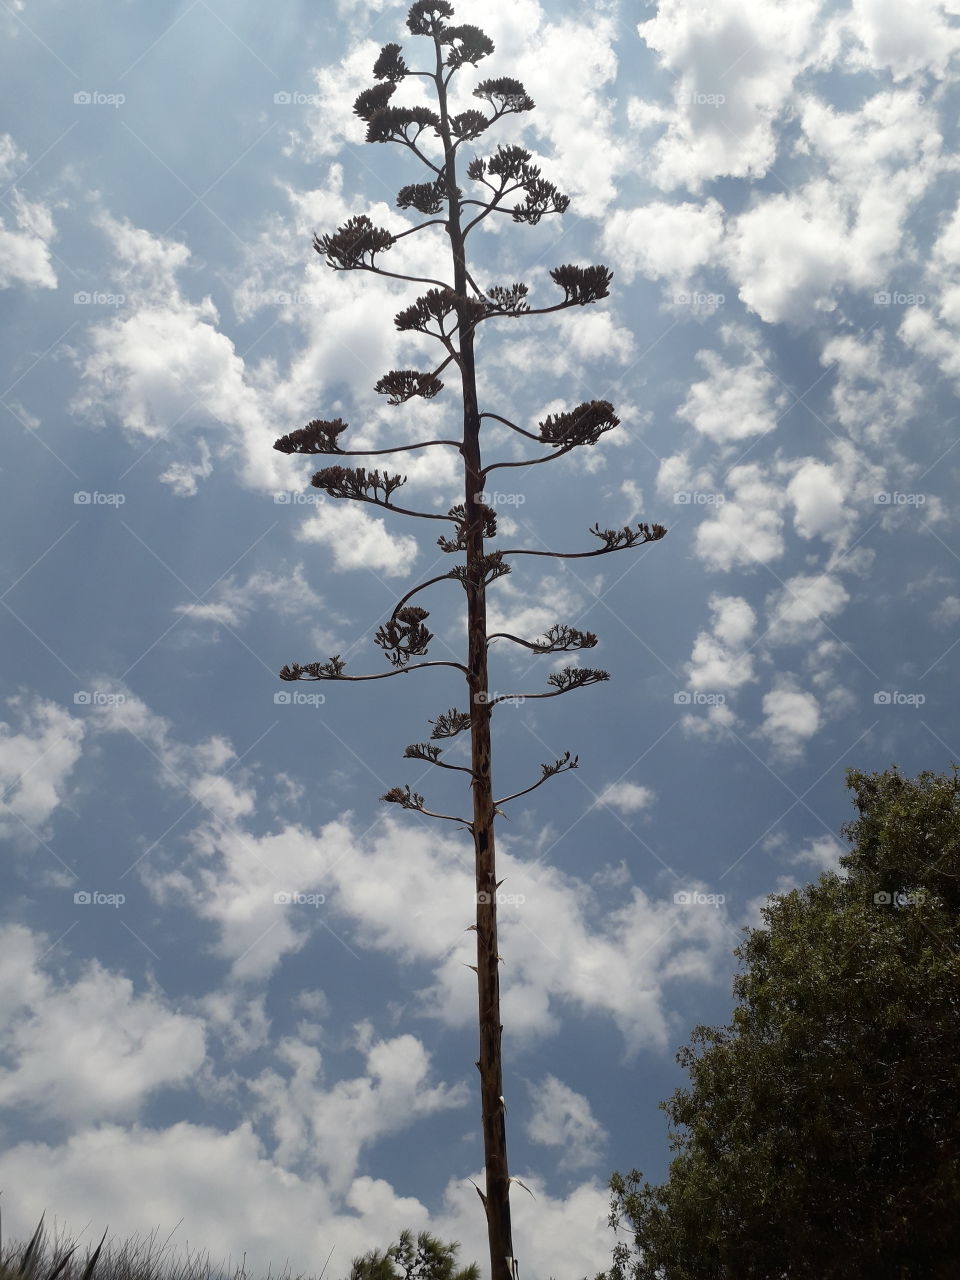 "Tree in the sky"